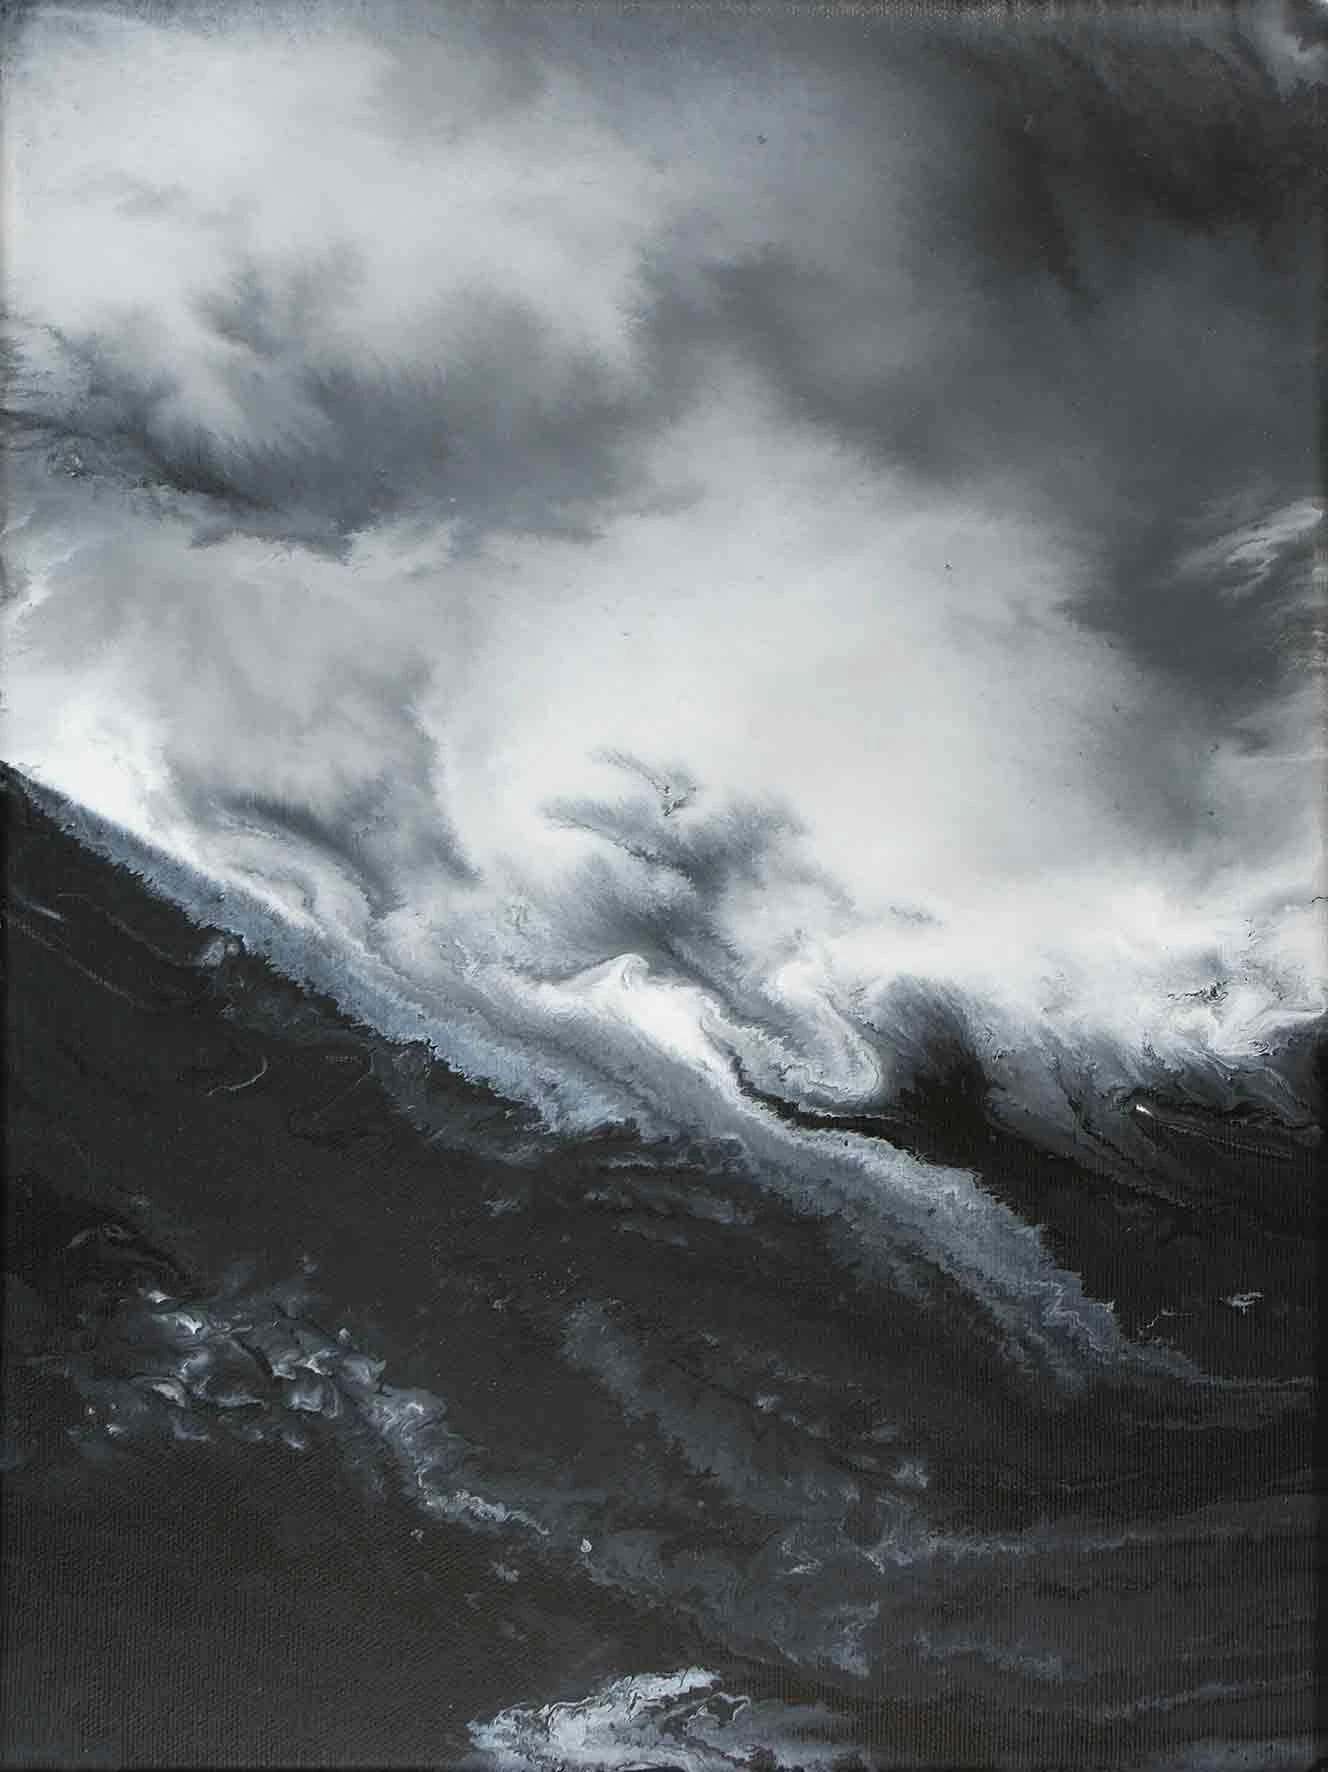 Seestück, 2010, acrylic on canvas, 40 x 30 cm